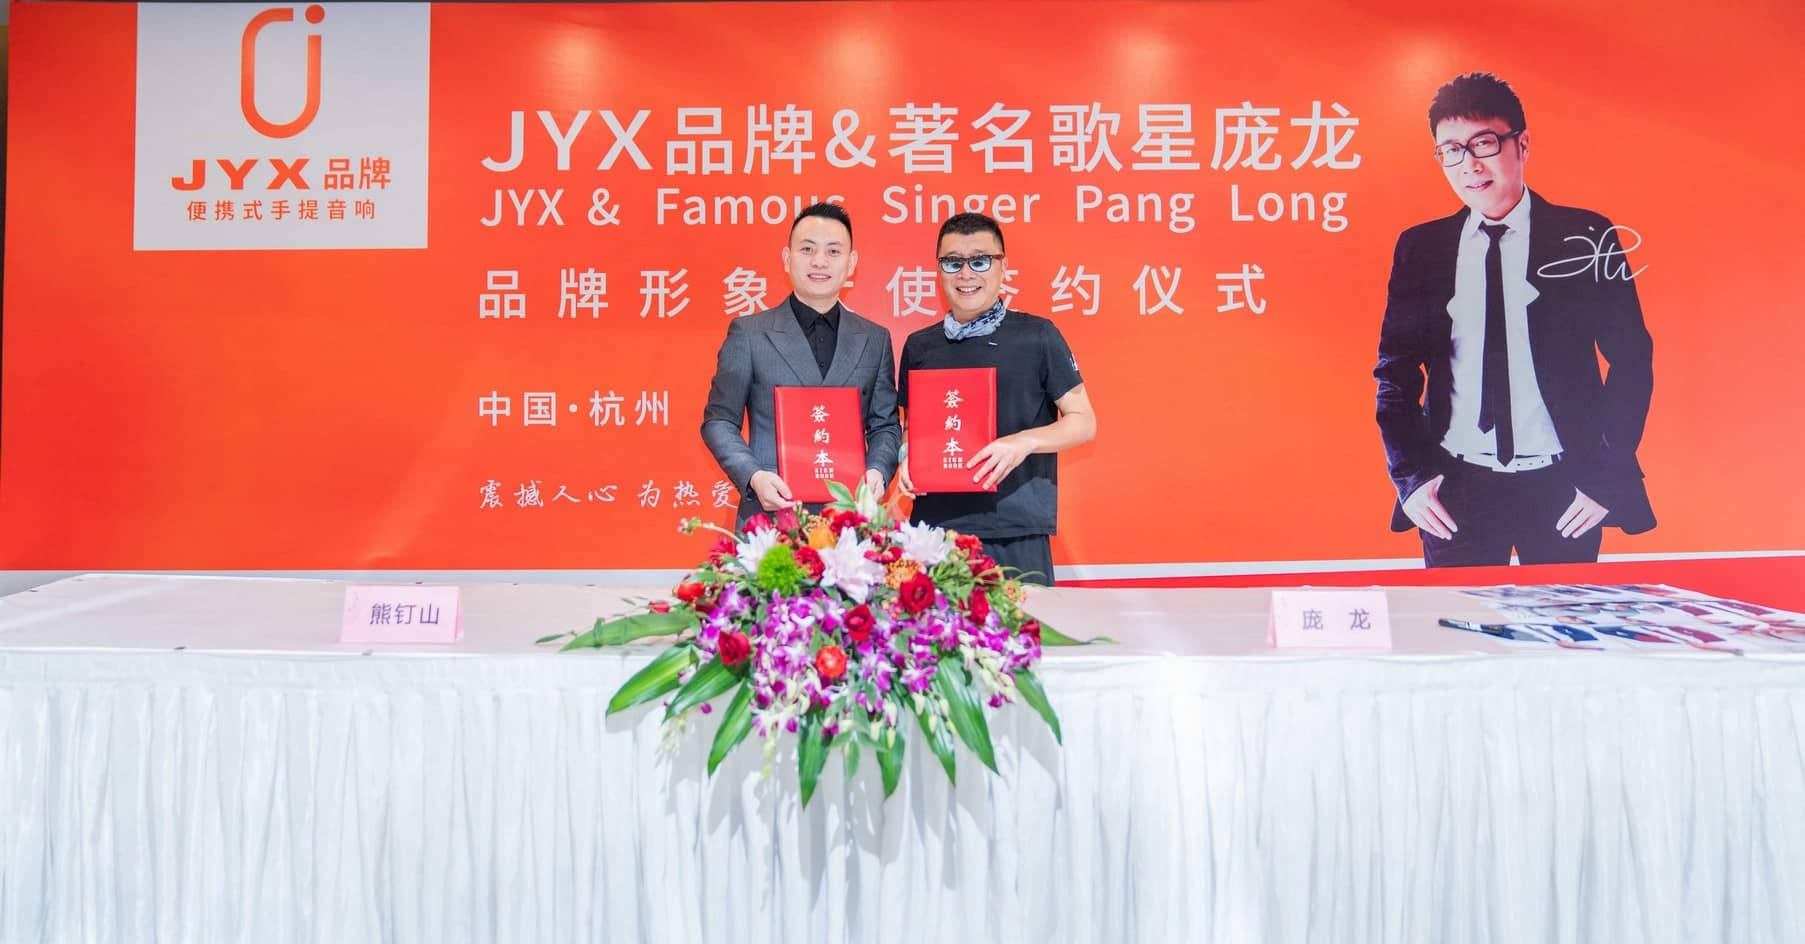 JYX品牌签约著名歌星庞龙为品牌形象大使